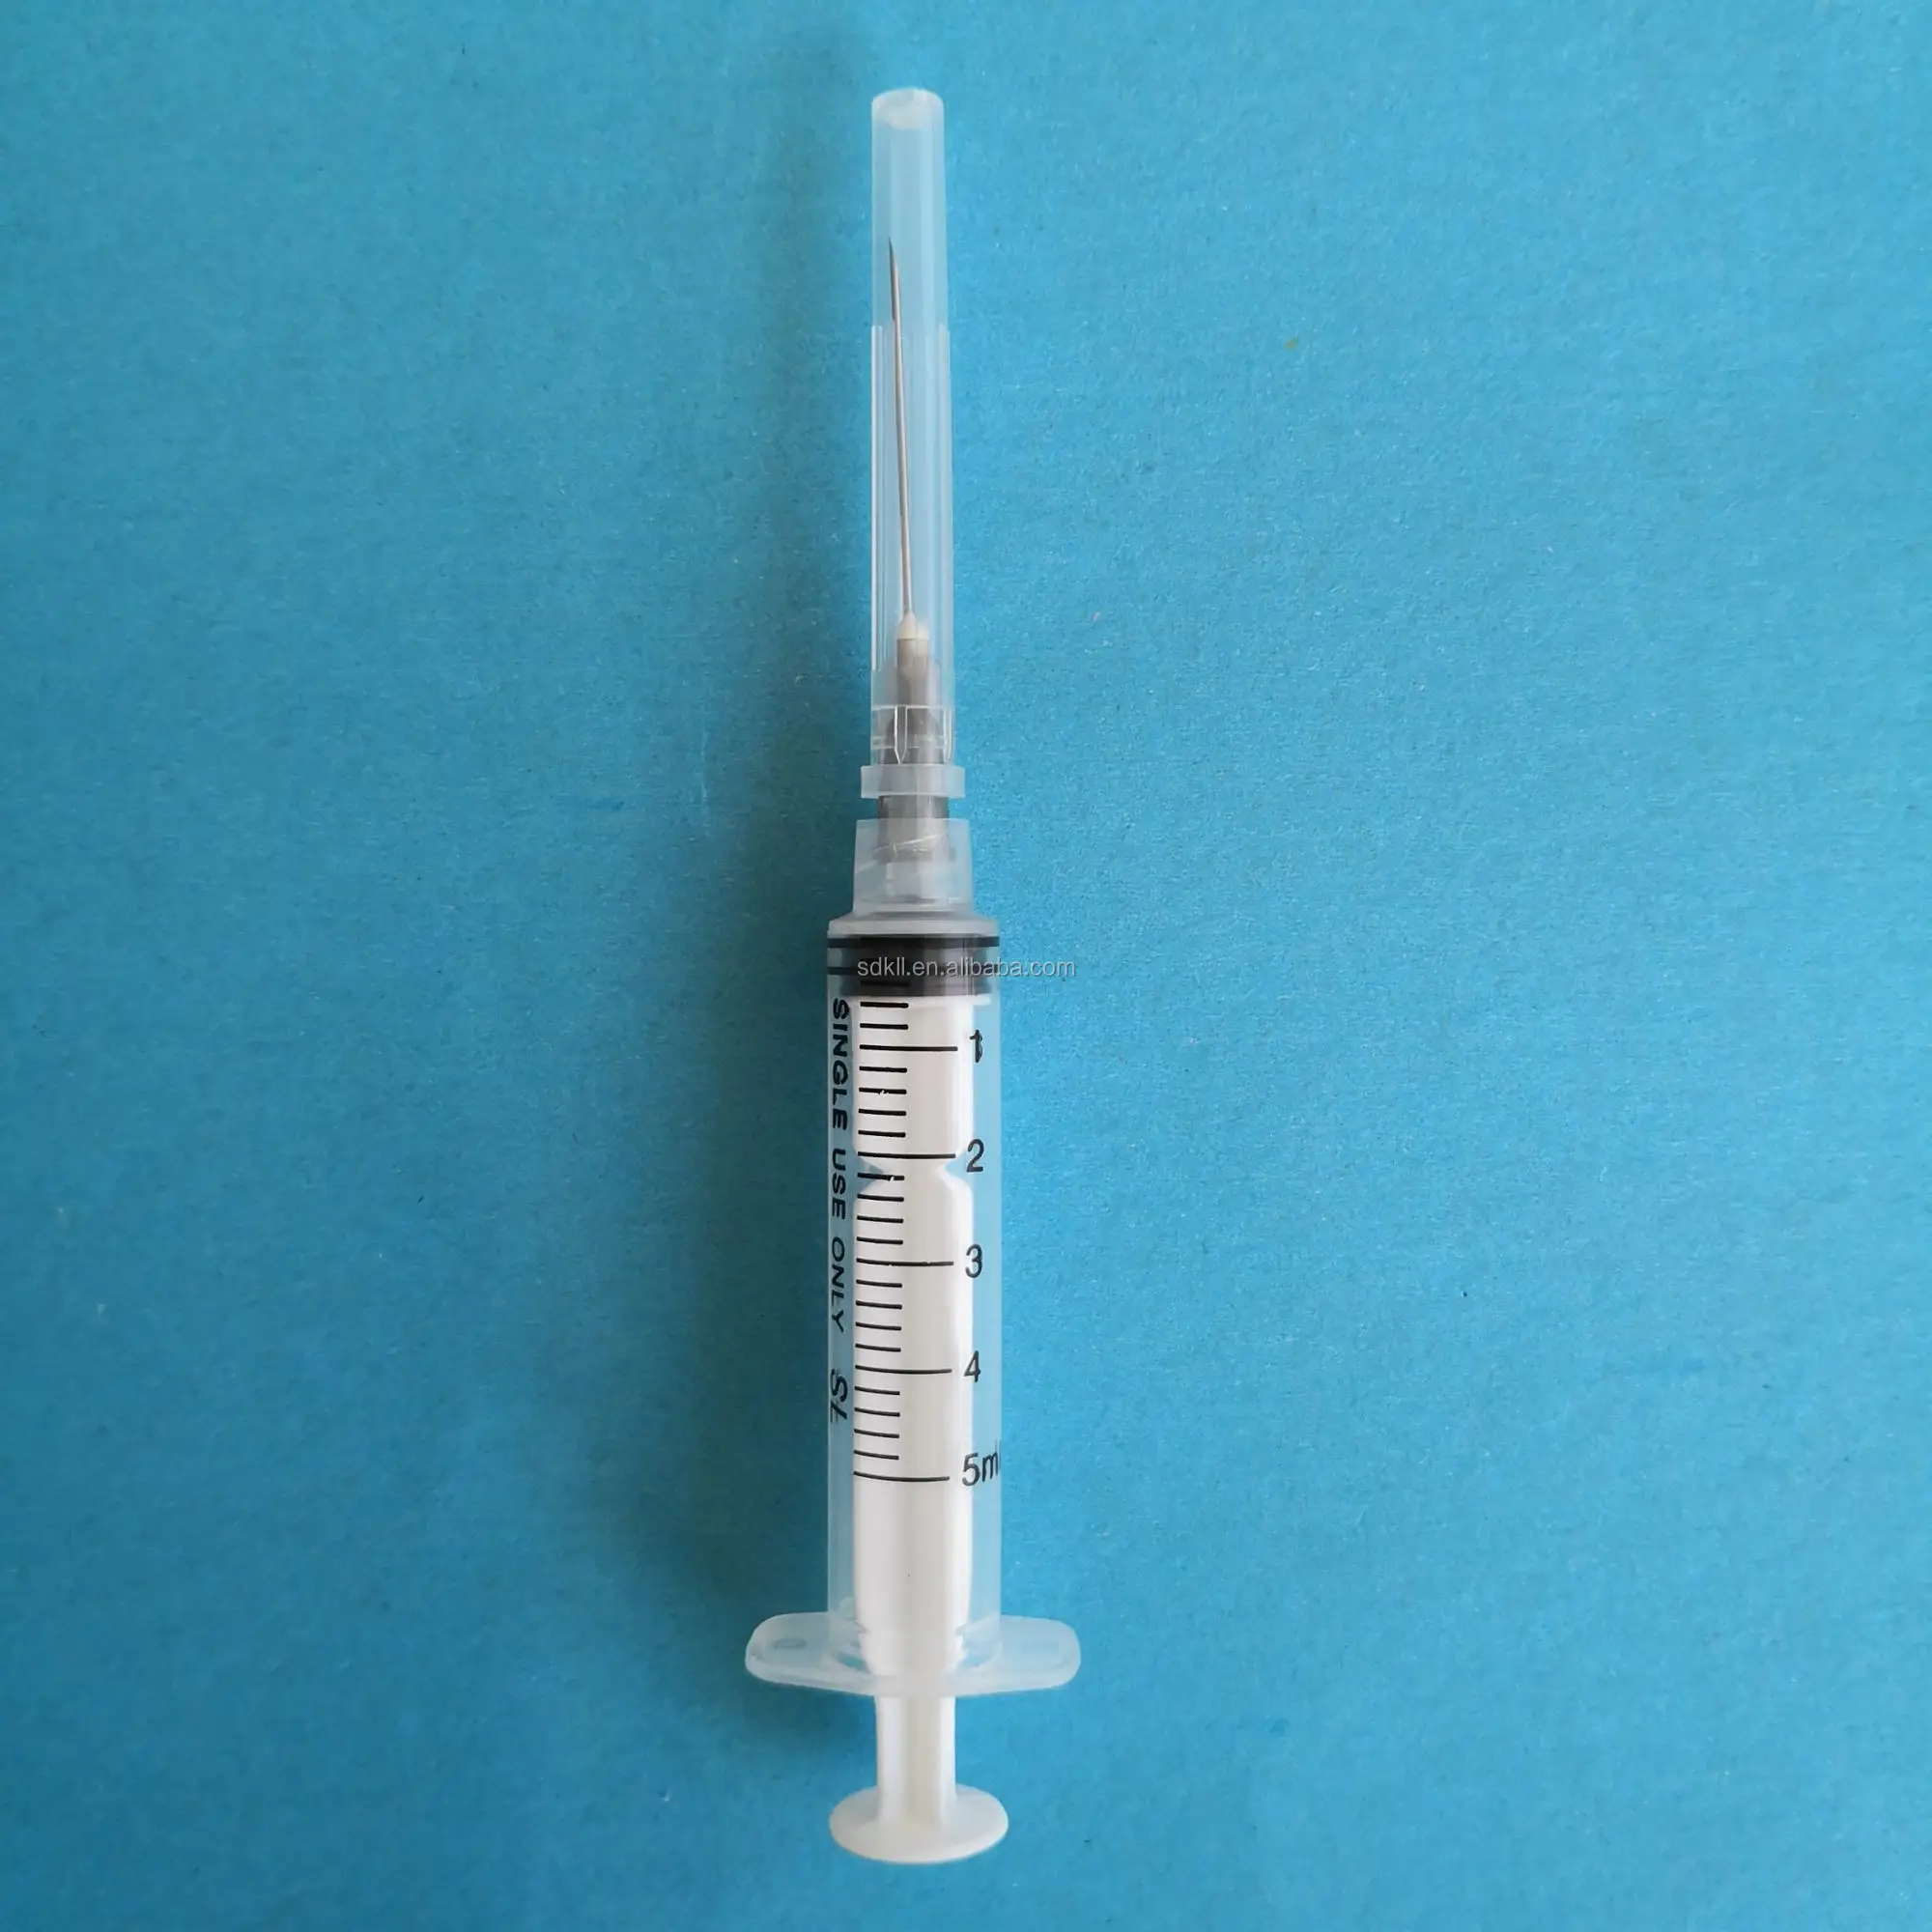 Mejor Precio de gran jeringa desechable con 24g neede inyección de insulina